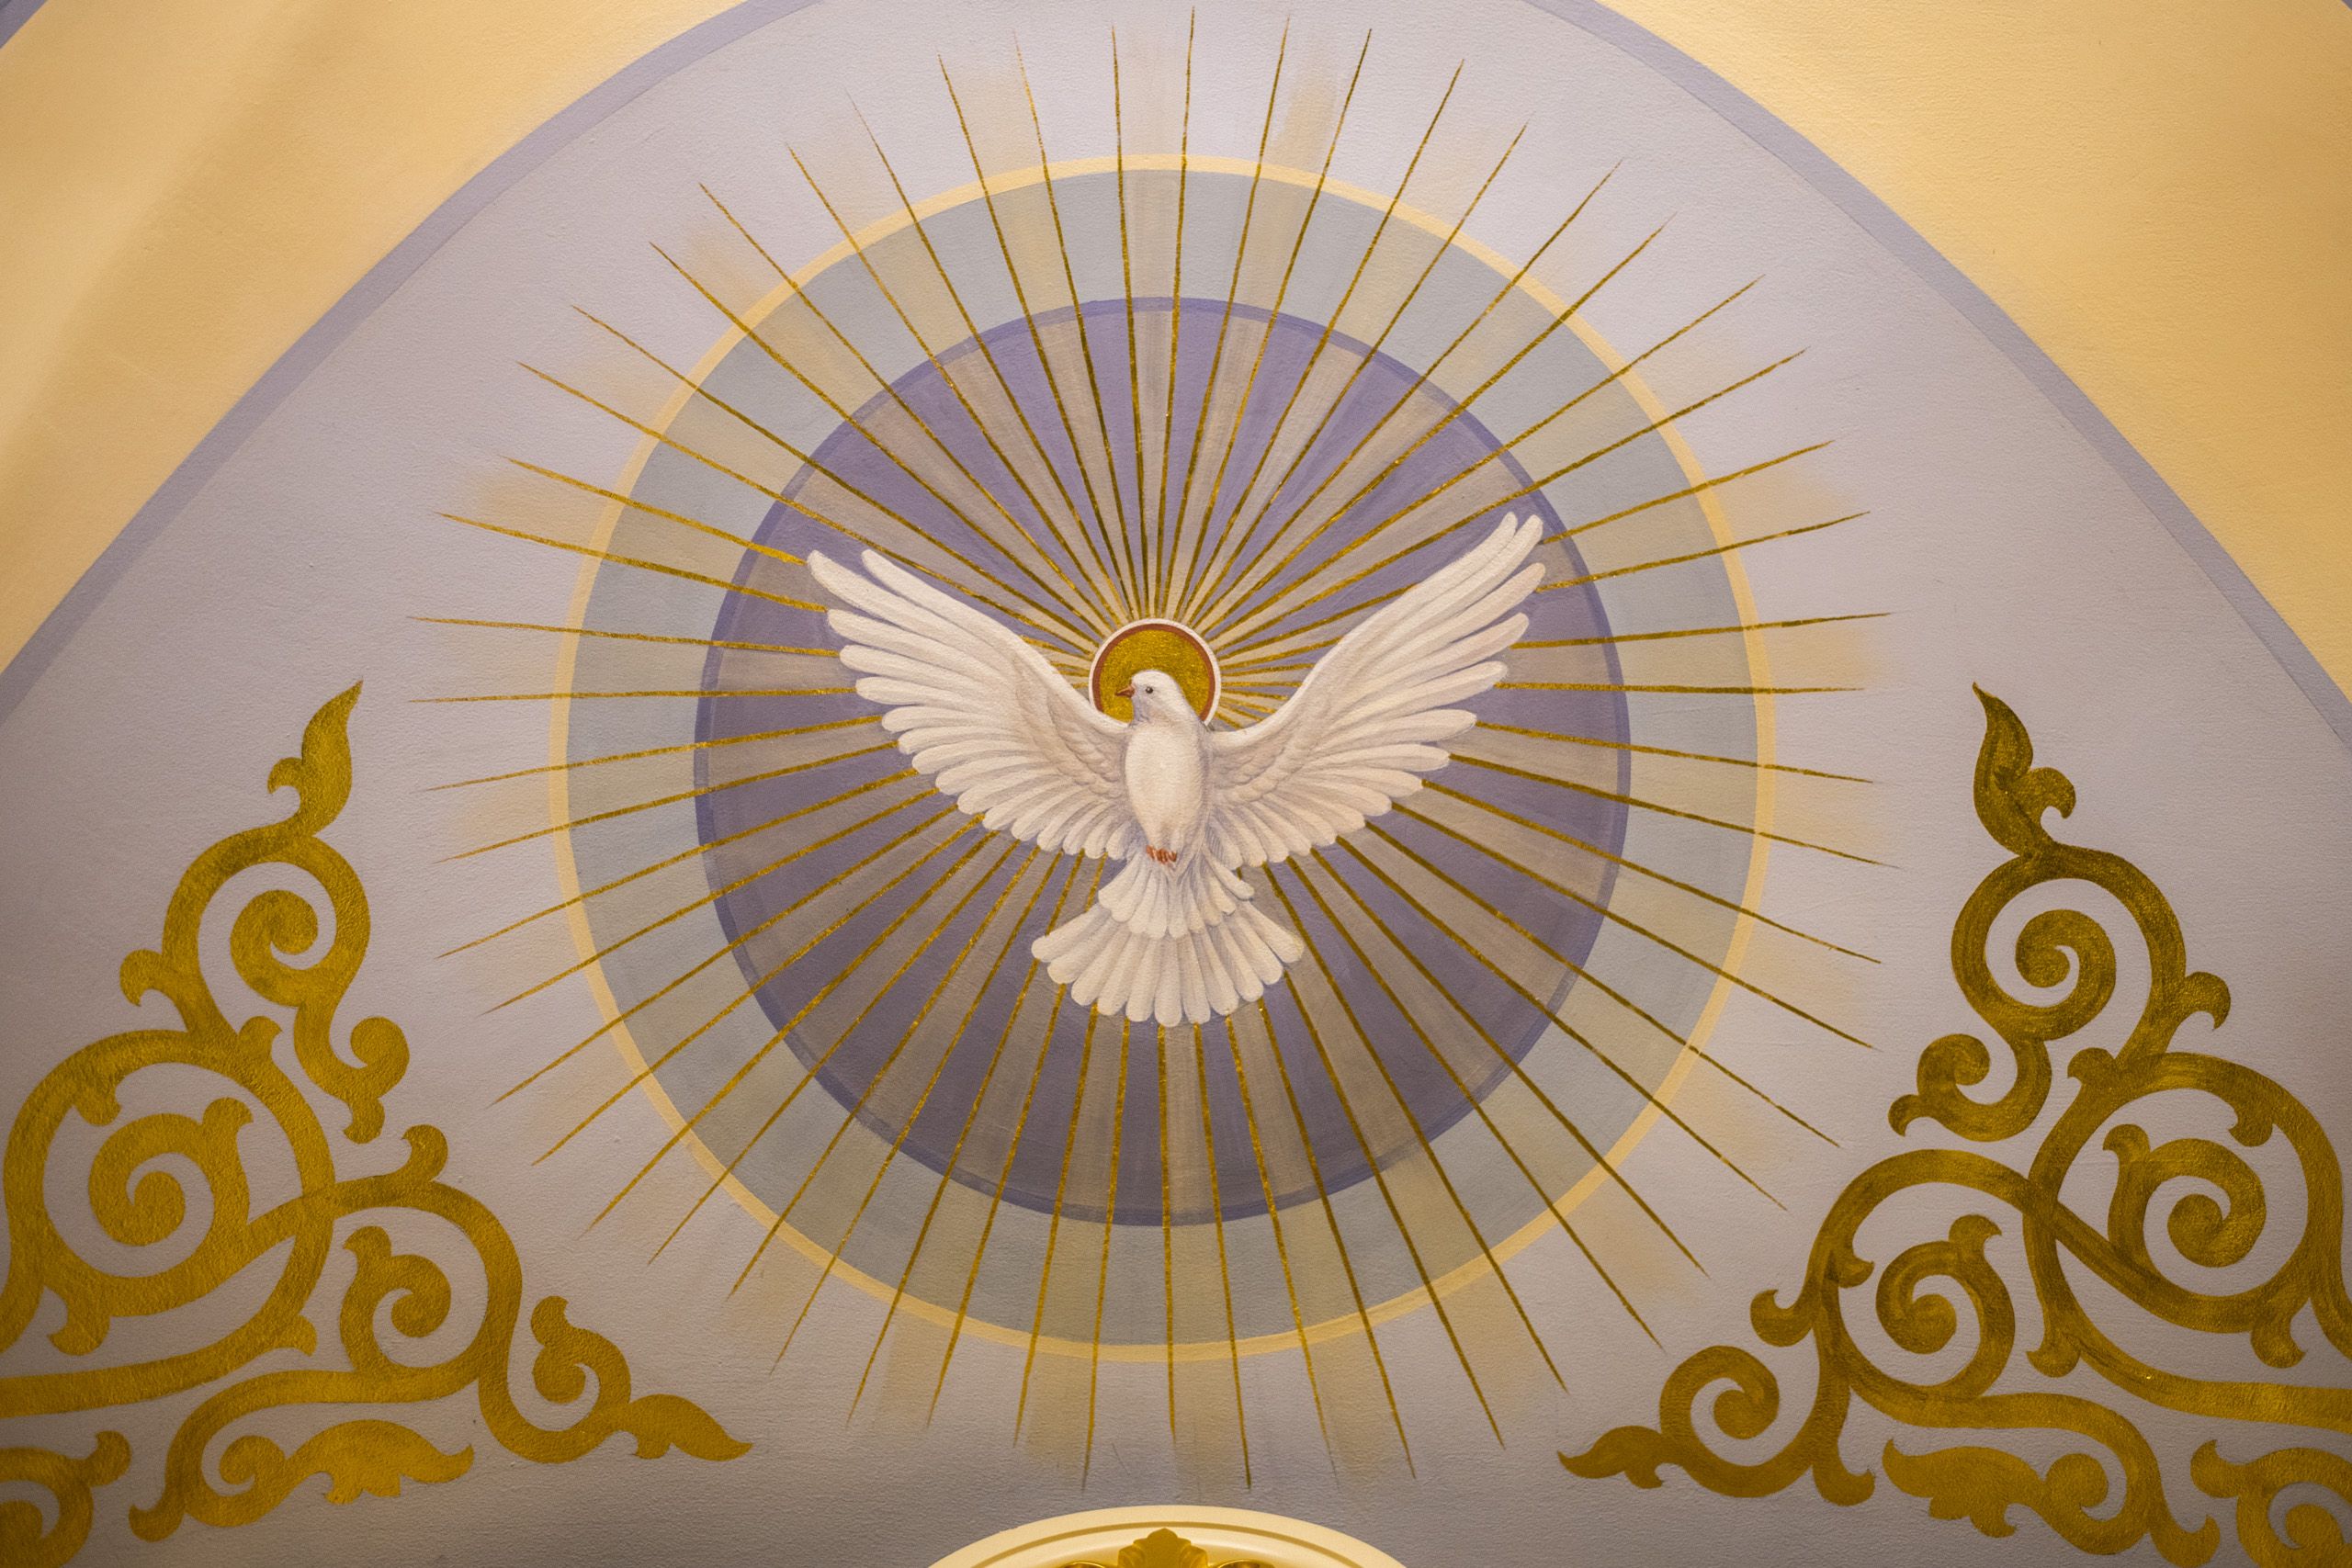 Св дух. Святой дух икона голубь. Символ Святого духа. Голубь символ Святого духа. Роспись потолка храма.